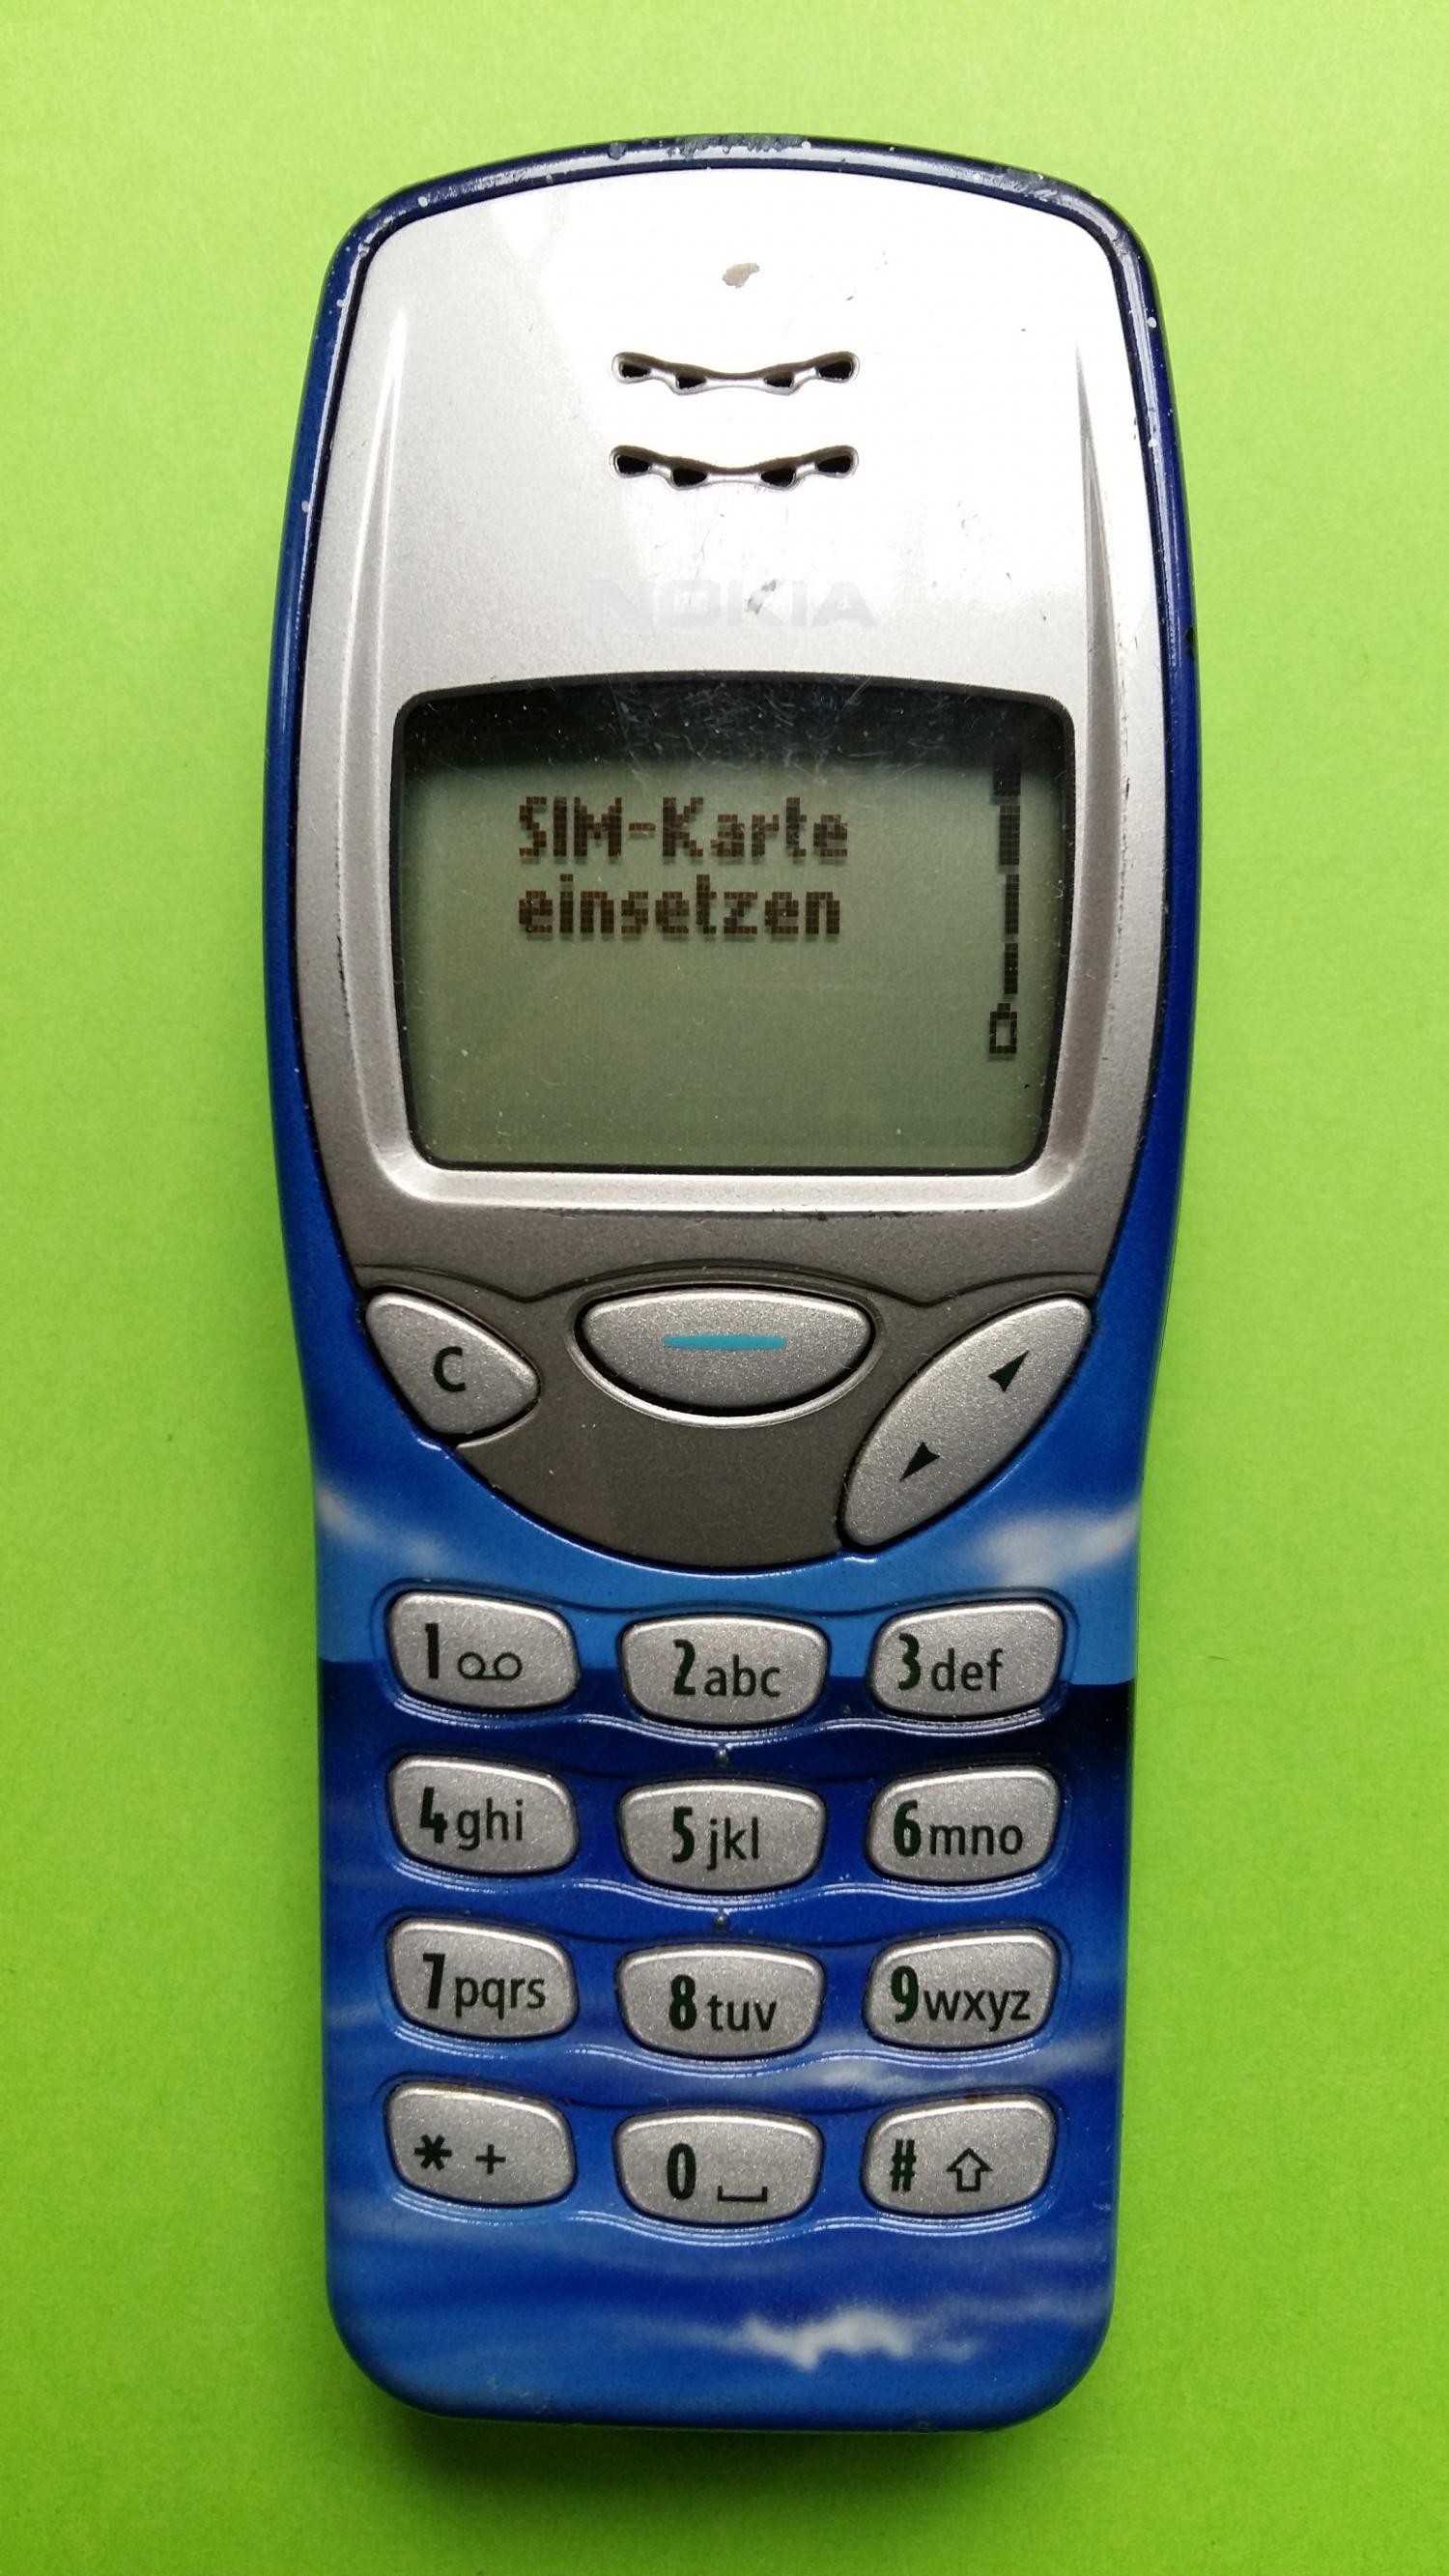 image-7303109-Nokia 3210 (25)1.jpg